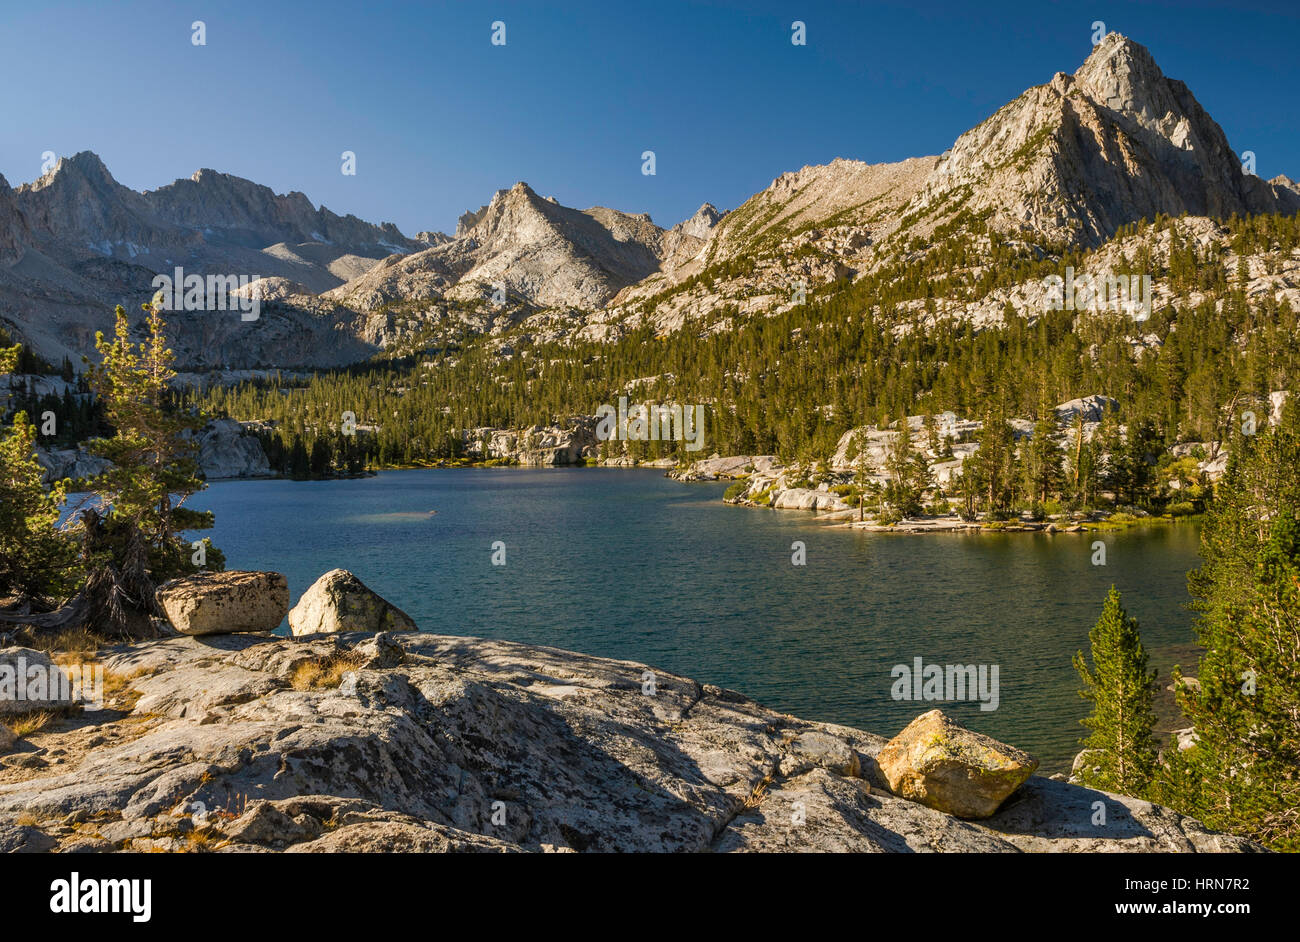 Lac Bleu dans le bassin de Sabrina, Mont Thompson sur le côté gauche, l'évolution nationale, John Muir Wilderness, est de la Sierra Nevada, Californie, USA Banque D'Images